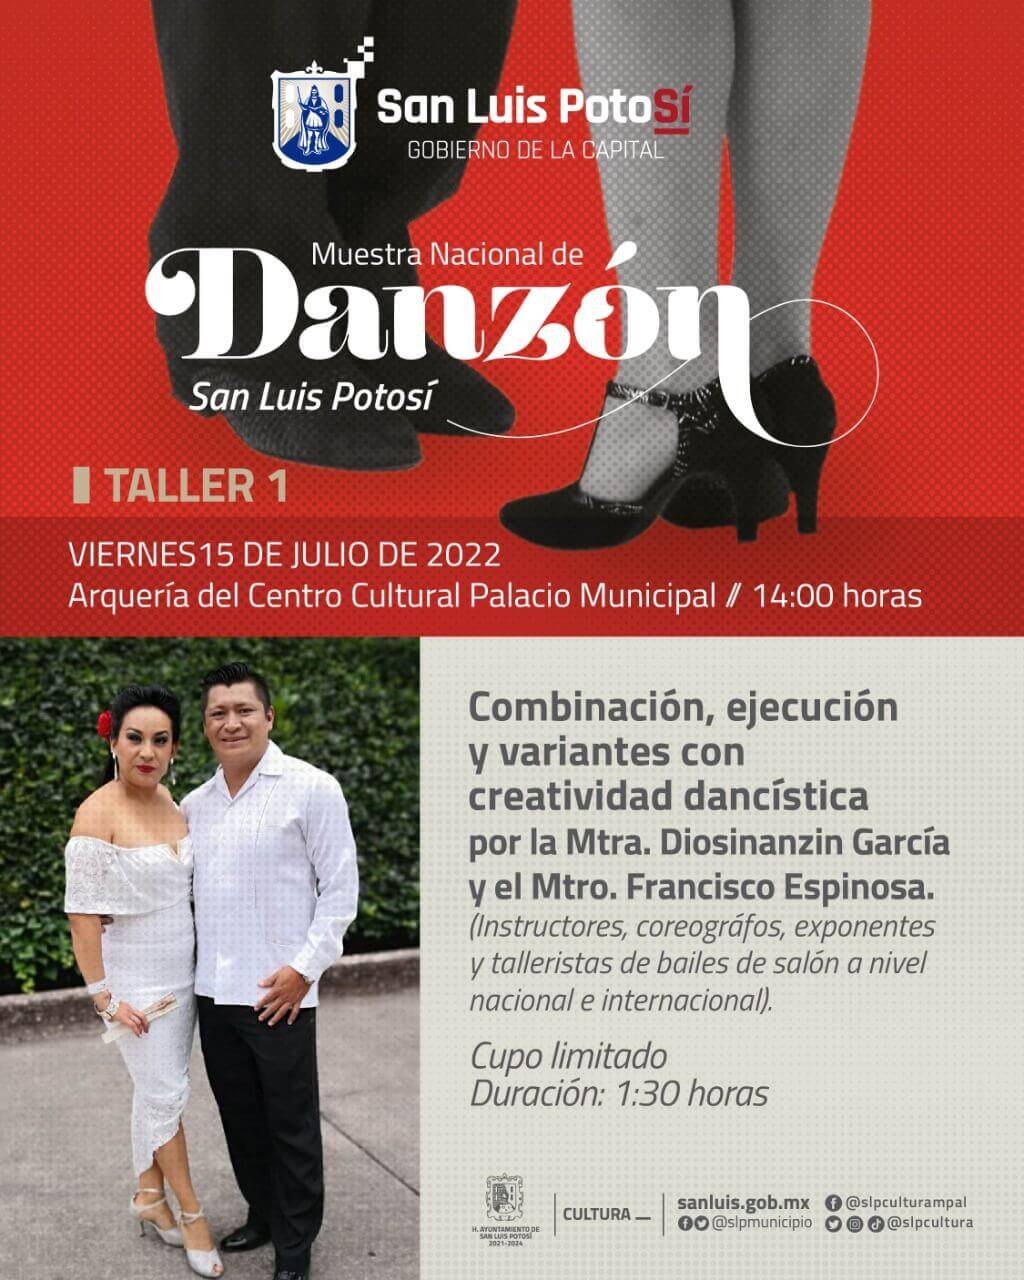 La Muestra Nacional de Danzón 2022 a desarrollarse del 15 al 17 de julio, ha convocado a los mejores talleristas de danzón de México